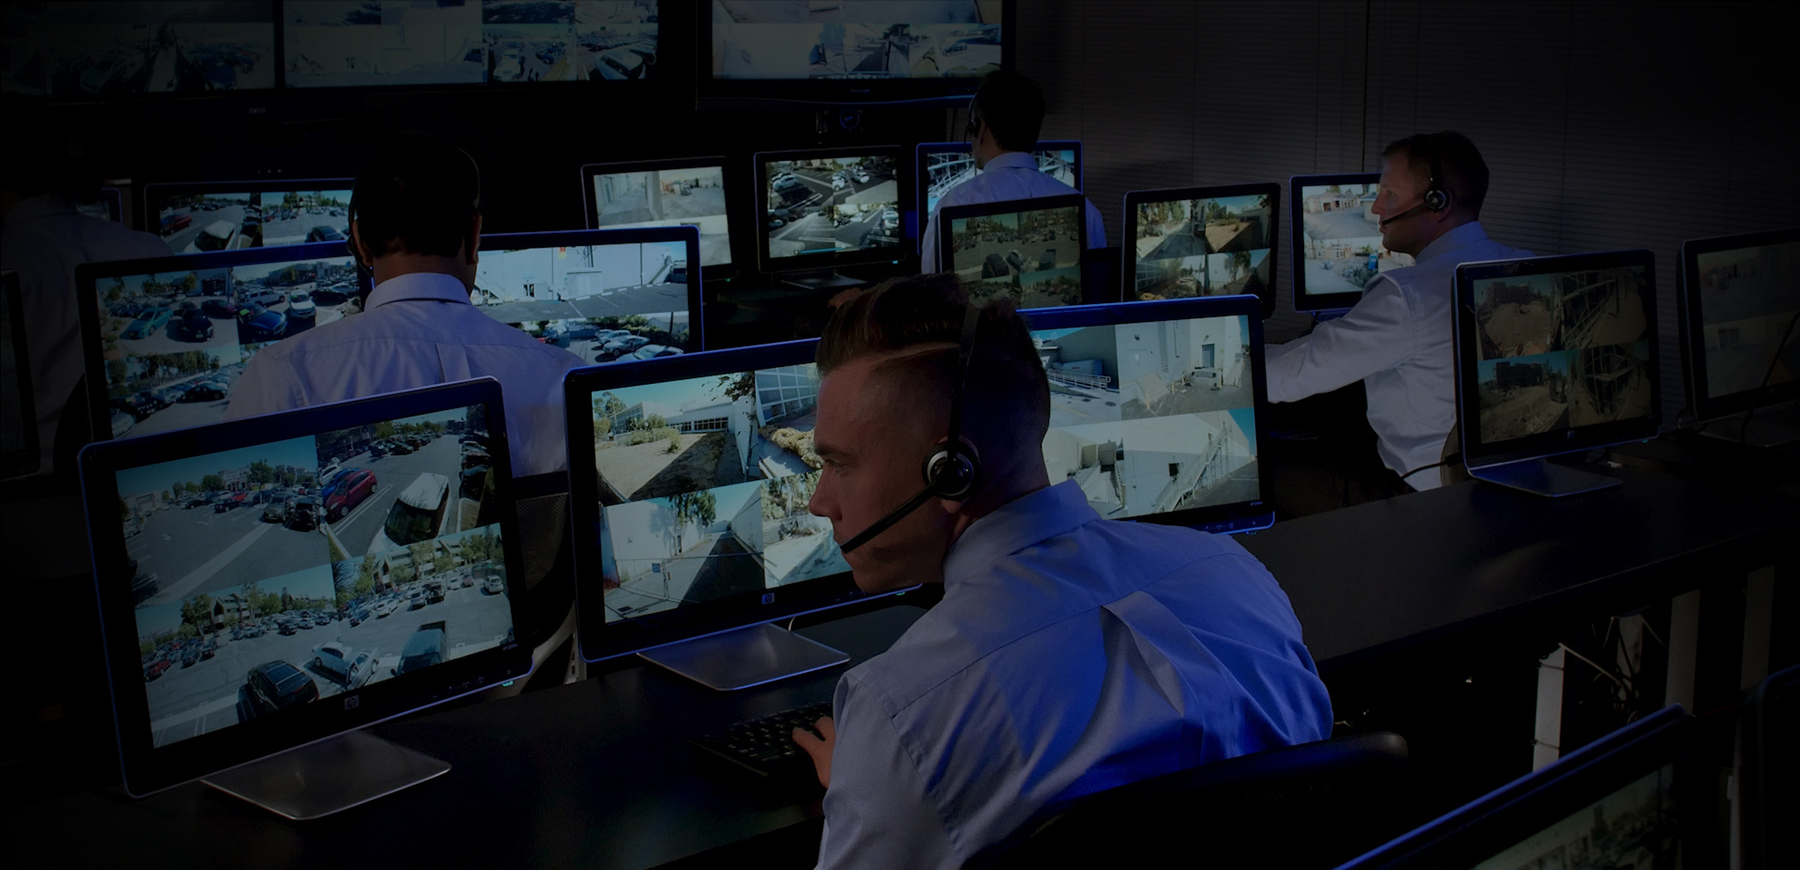 CCTV Video Surveillance for Medical Facilities in LA